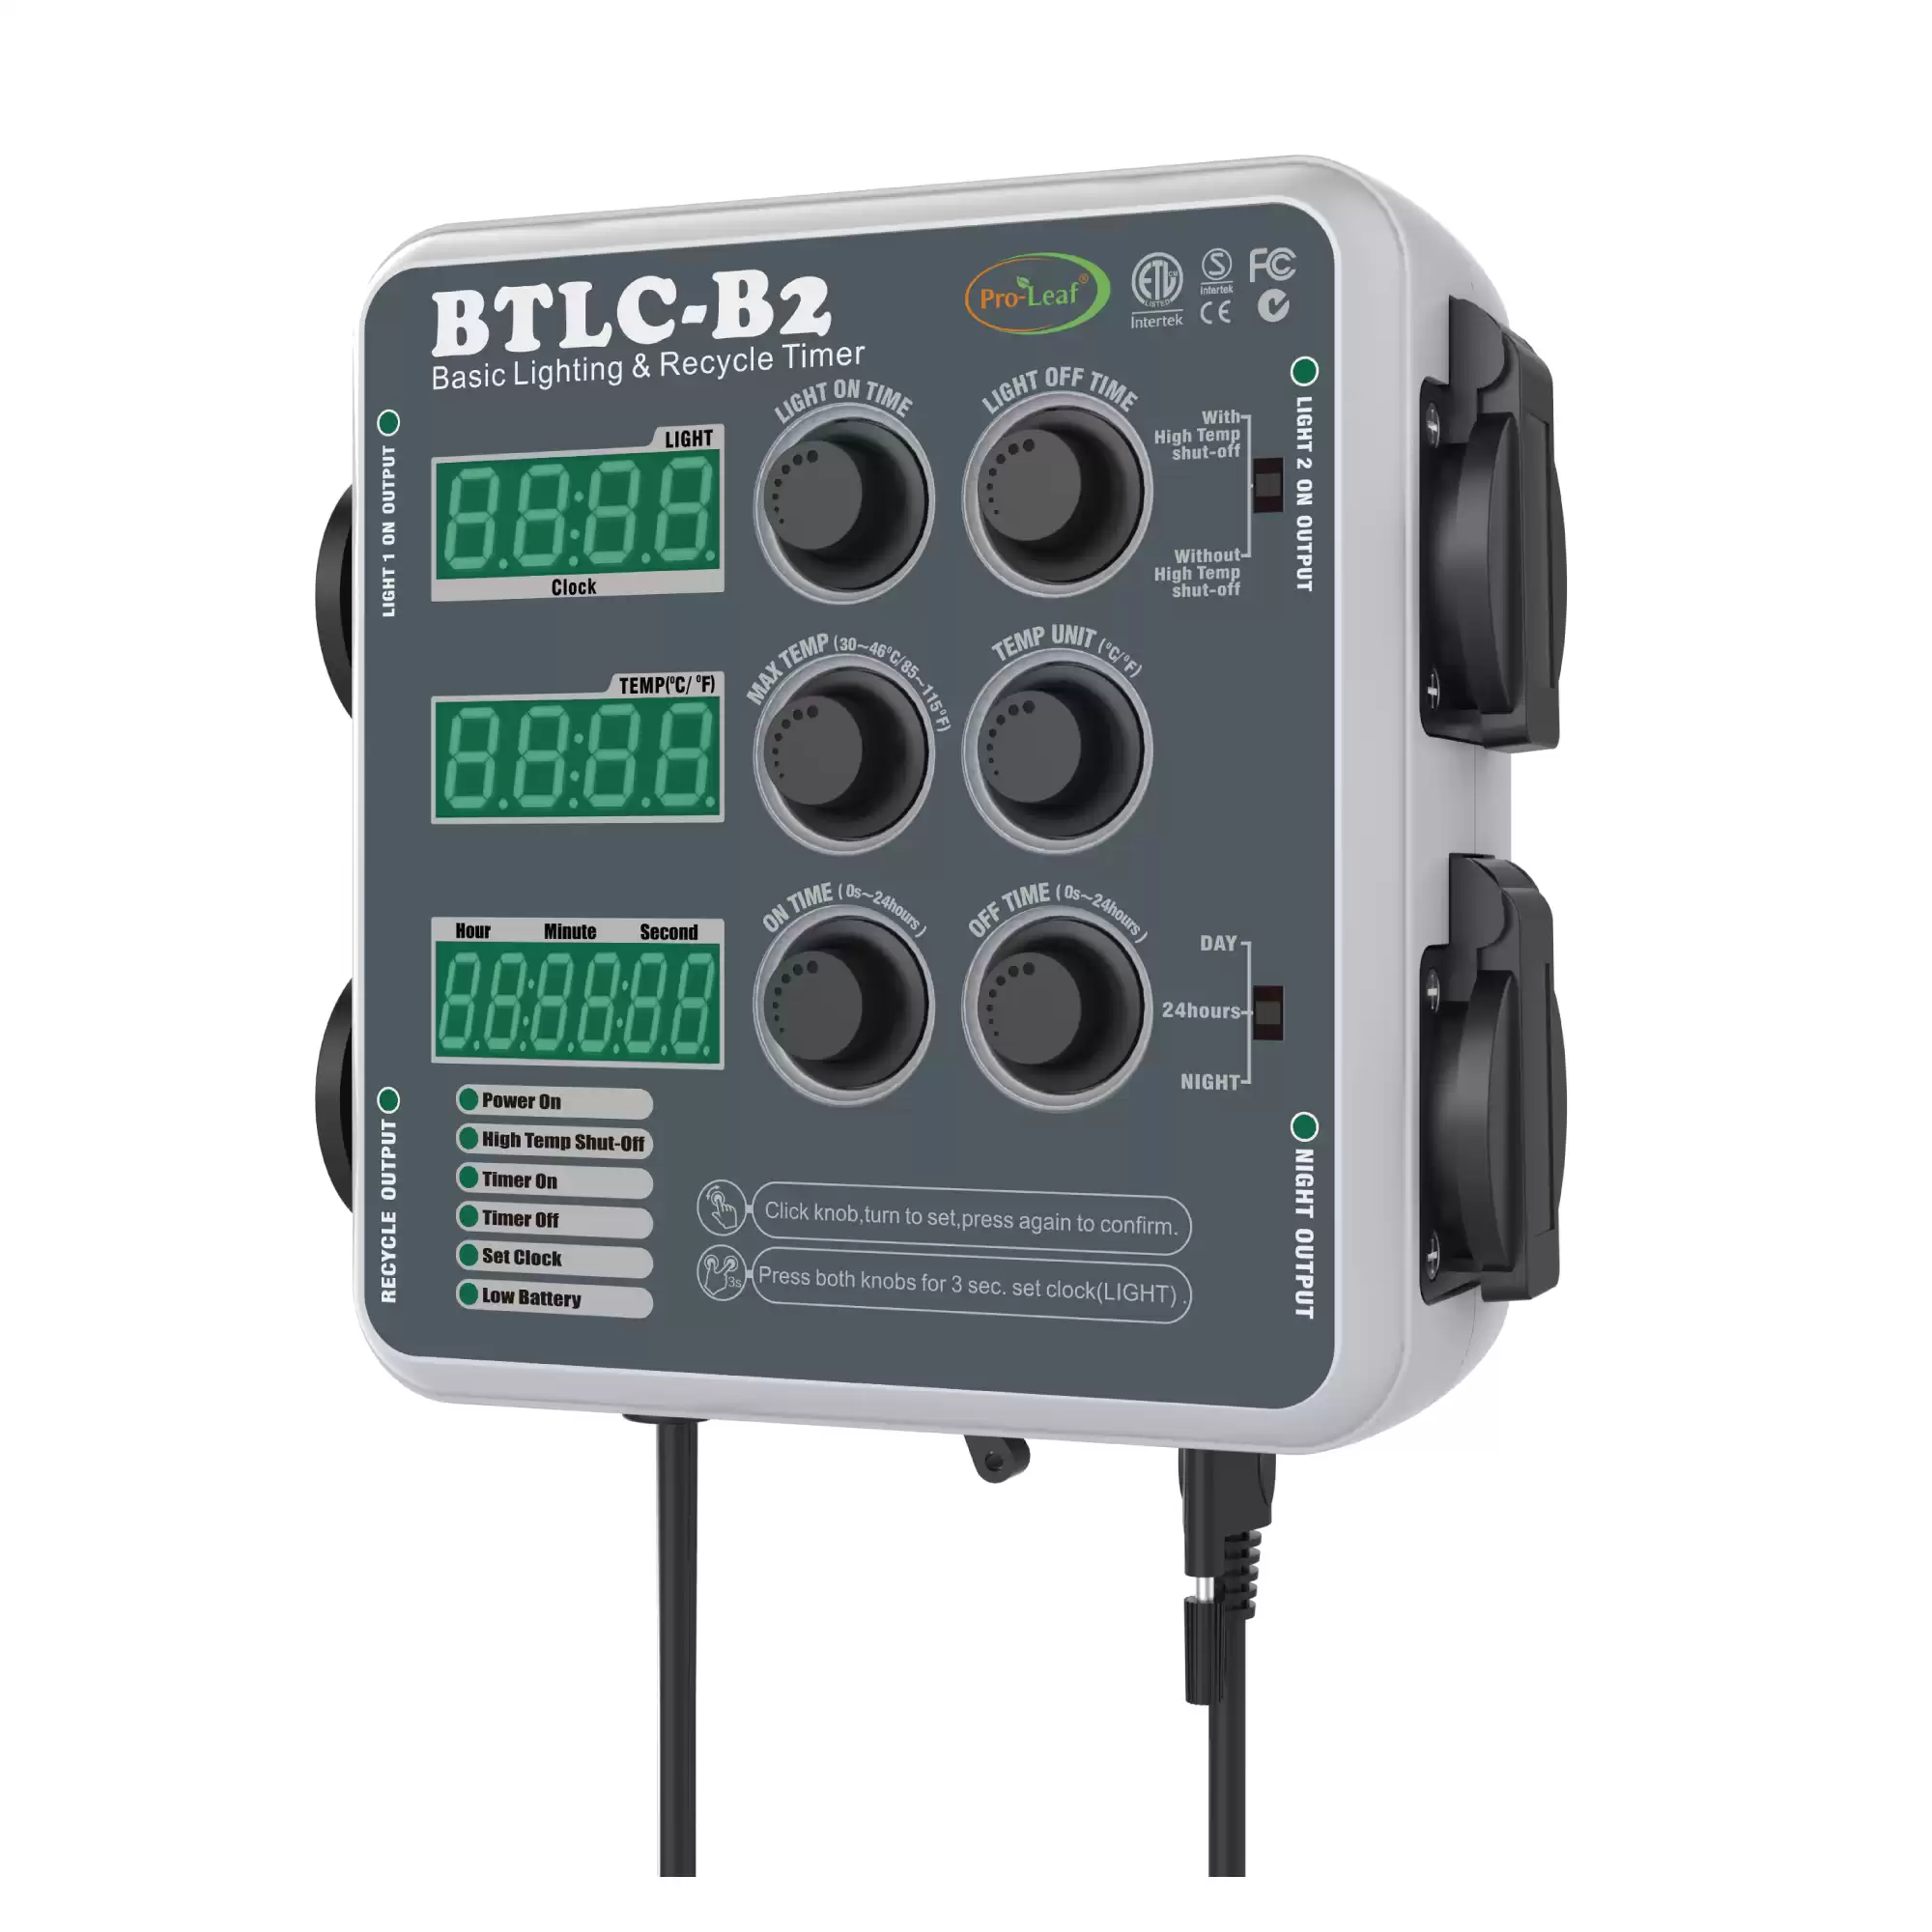 BTLC-B2 Digital Beleuchtung und Recycling Timer Controller